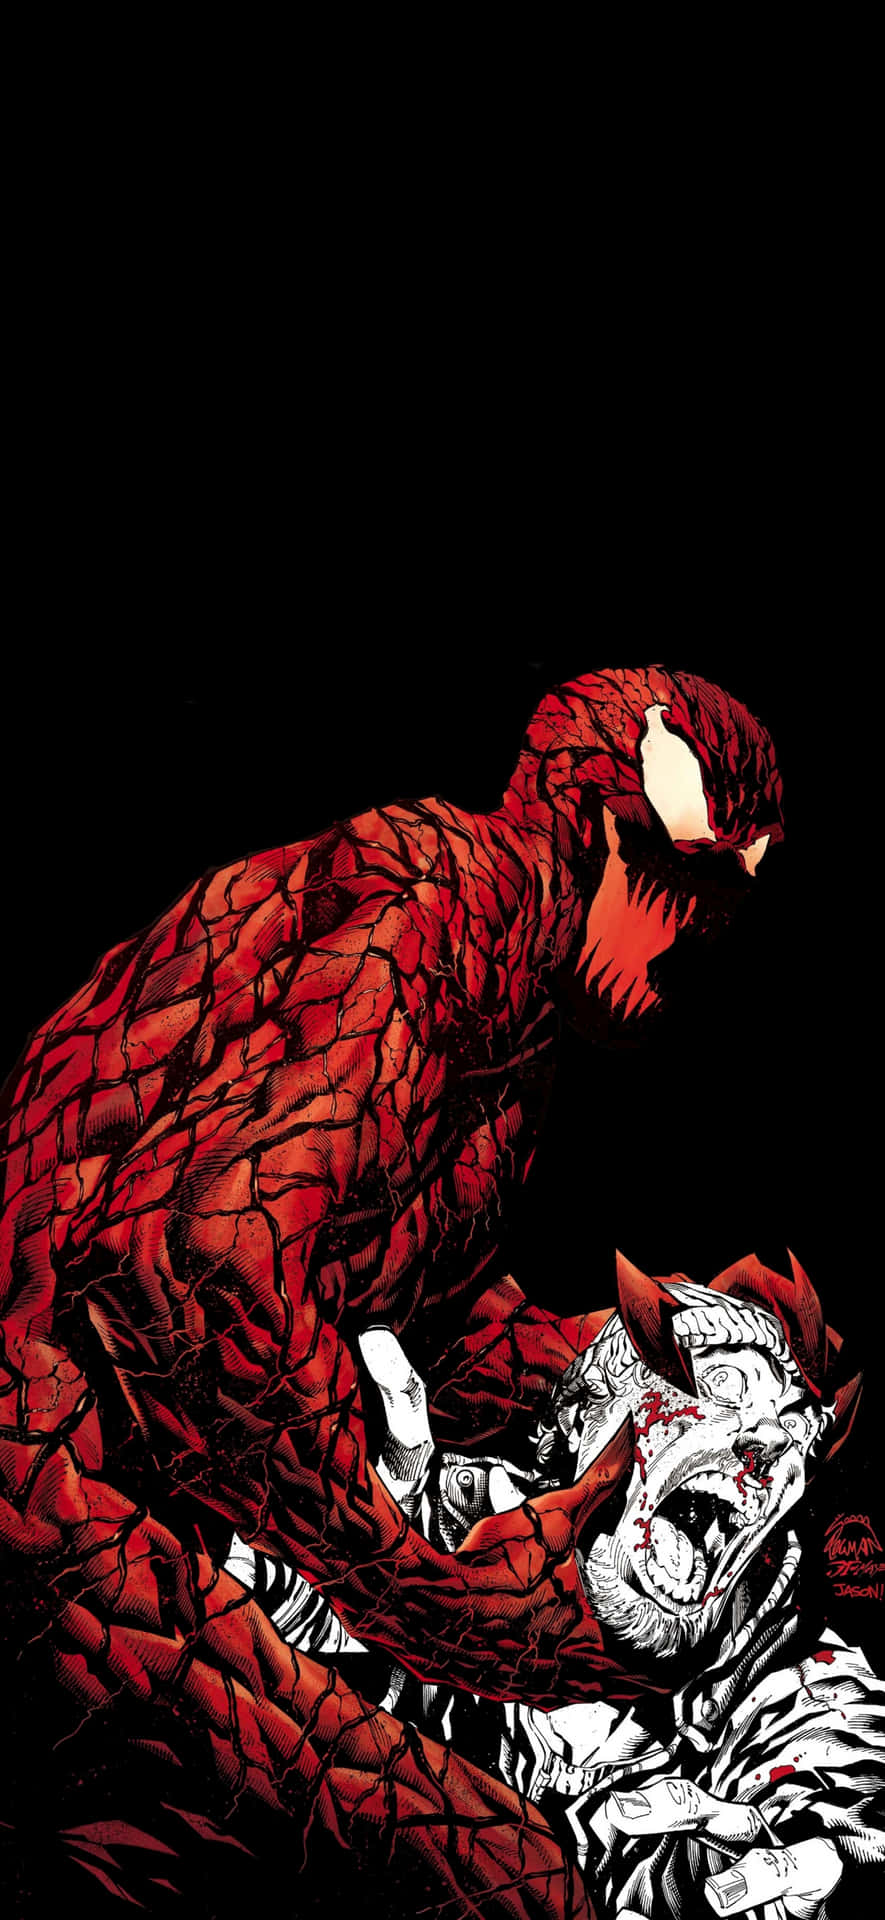 Marvel's Carnage Unleashed Wallpaper